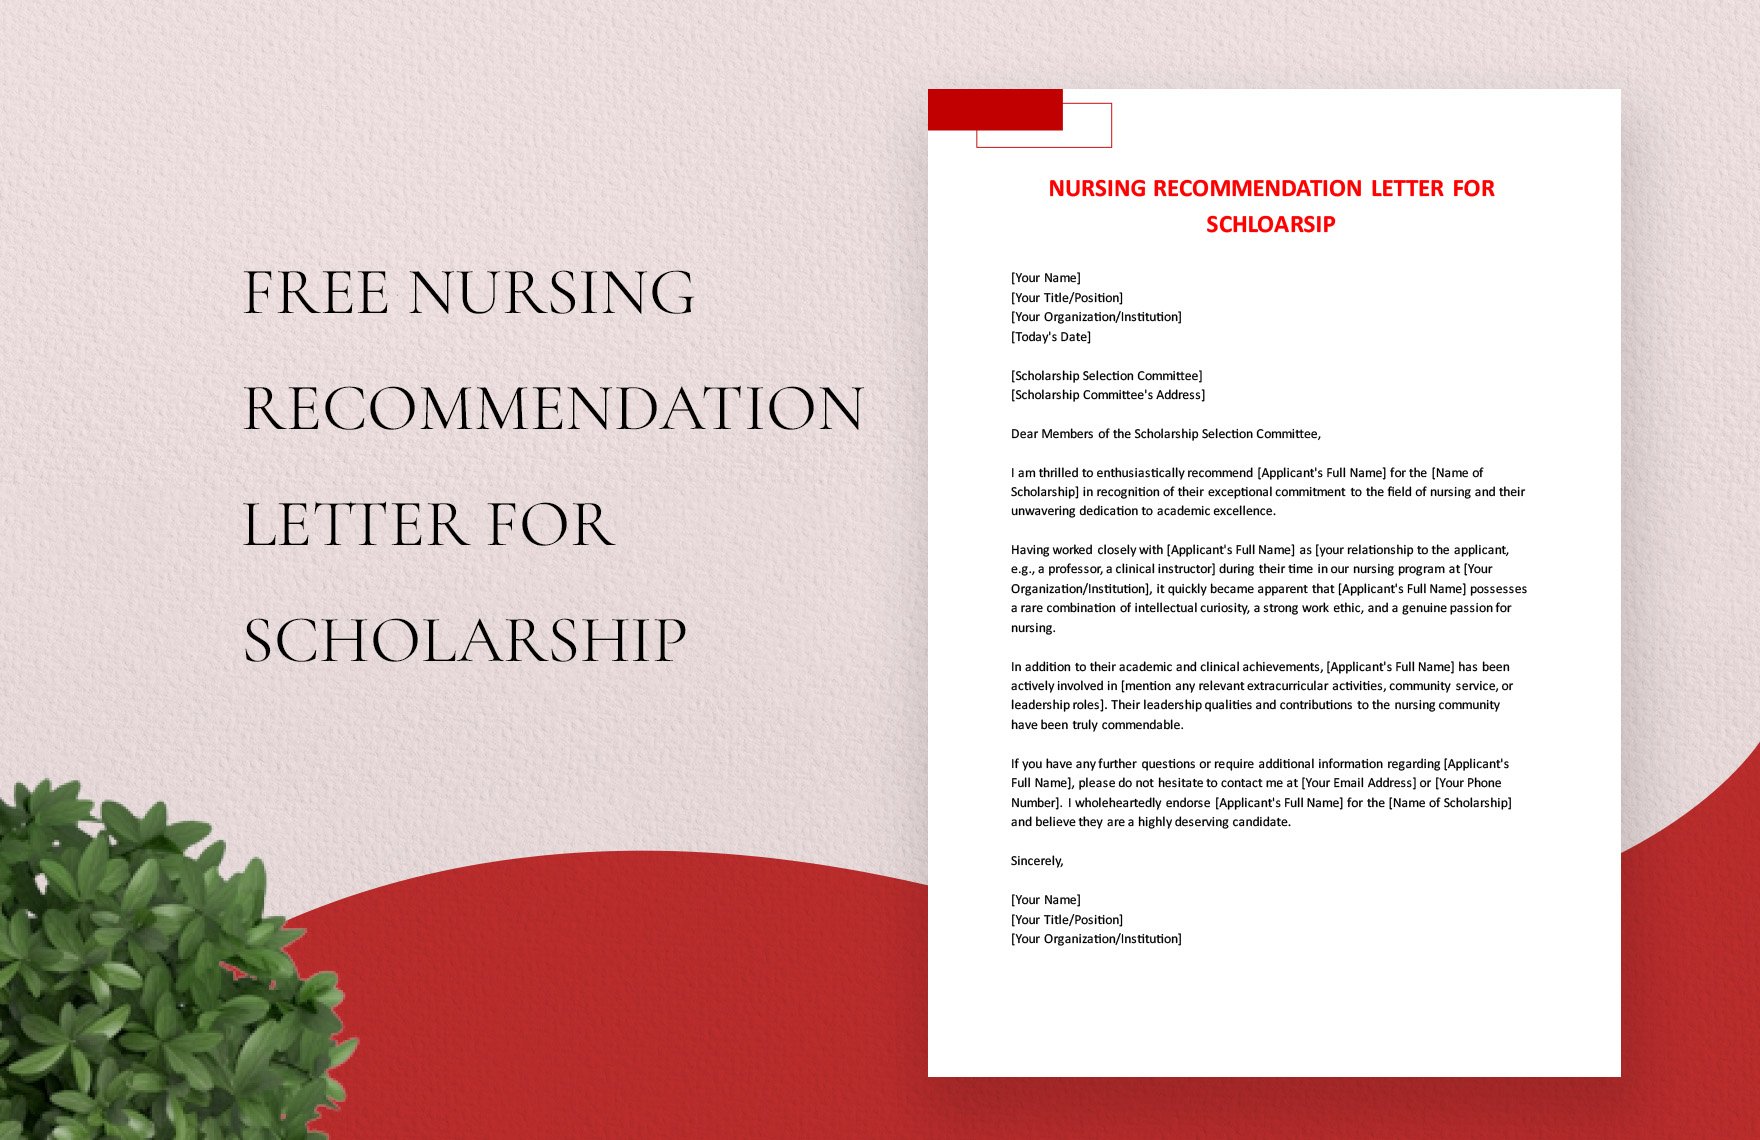 Nursing Recommendation Letter For Scholarship